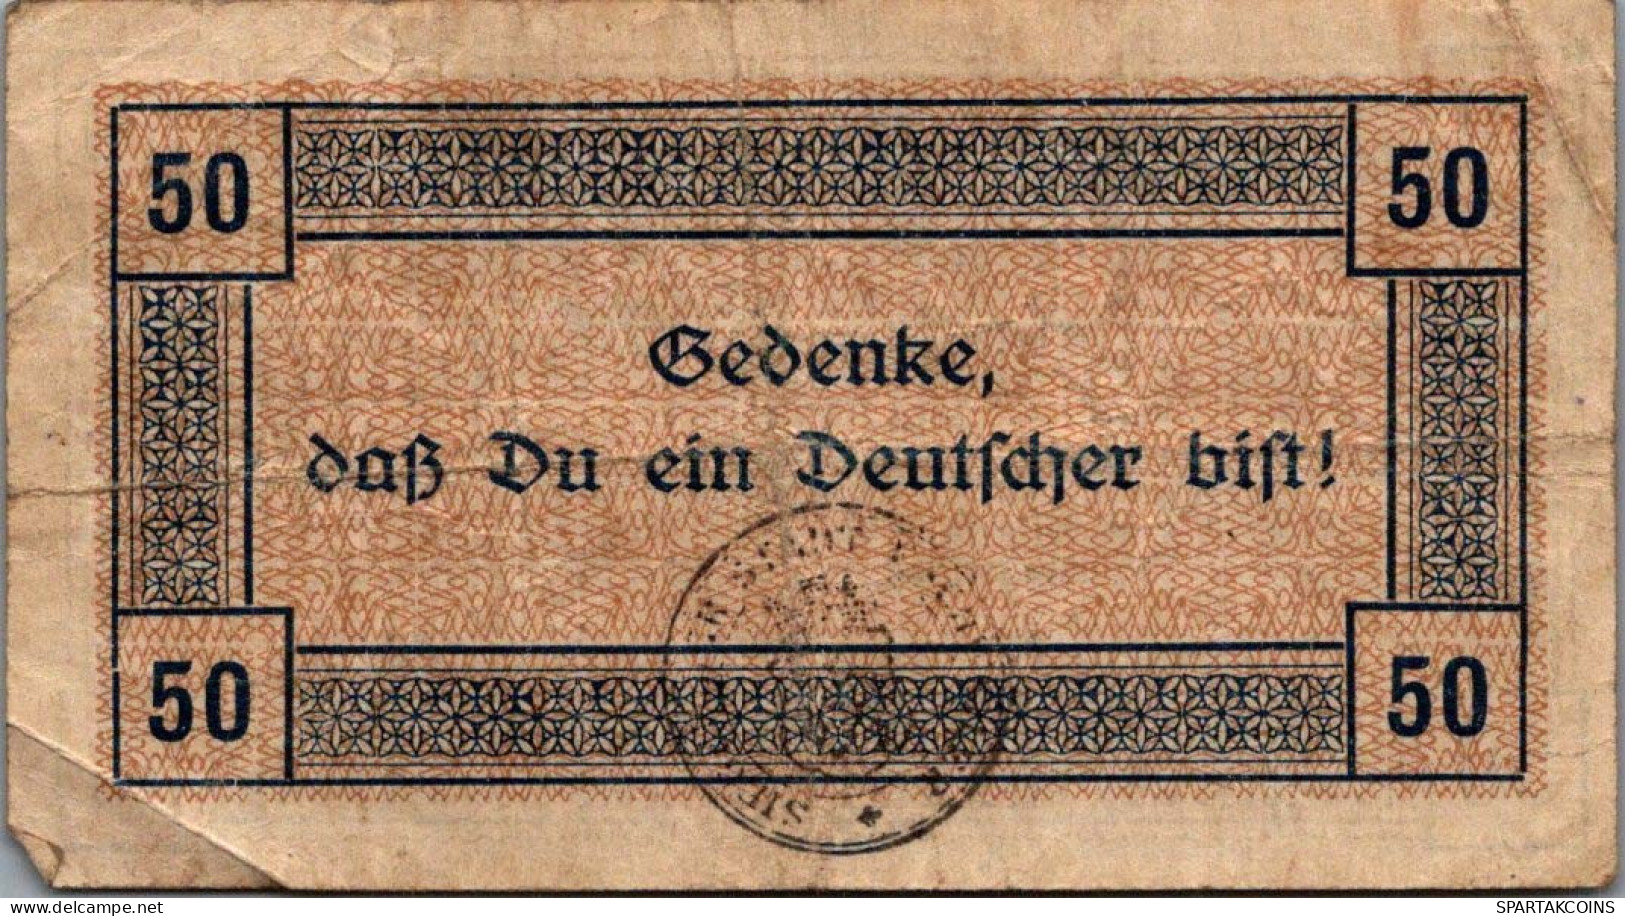 50 PFENNIG 1918 Stadt ESCHWEILER Rhine DEUTSCHLAND Notgeld Banknote #PG477 - [11] Local Banknote Issues